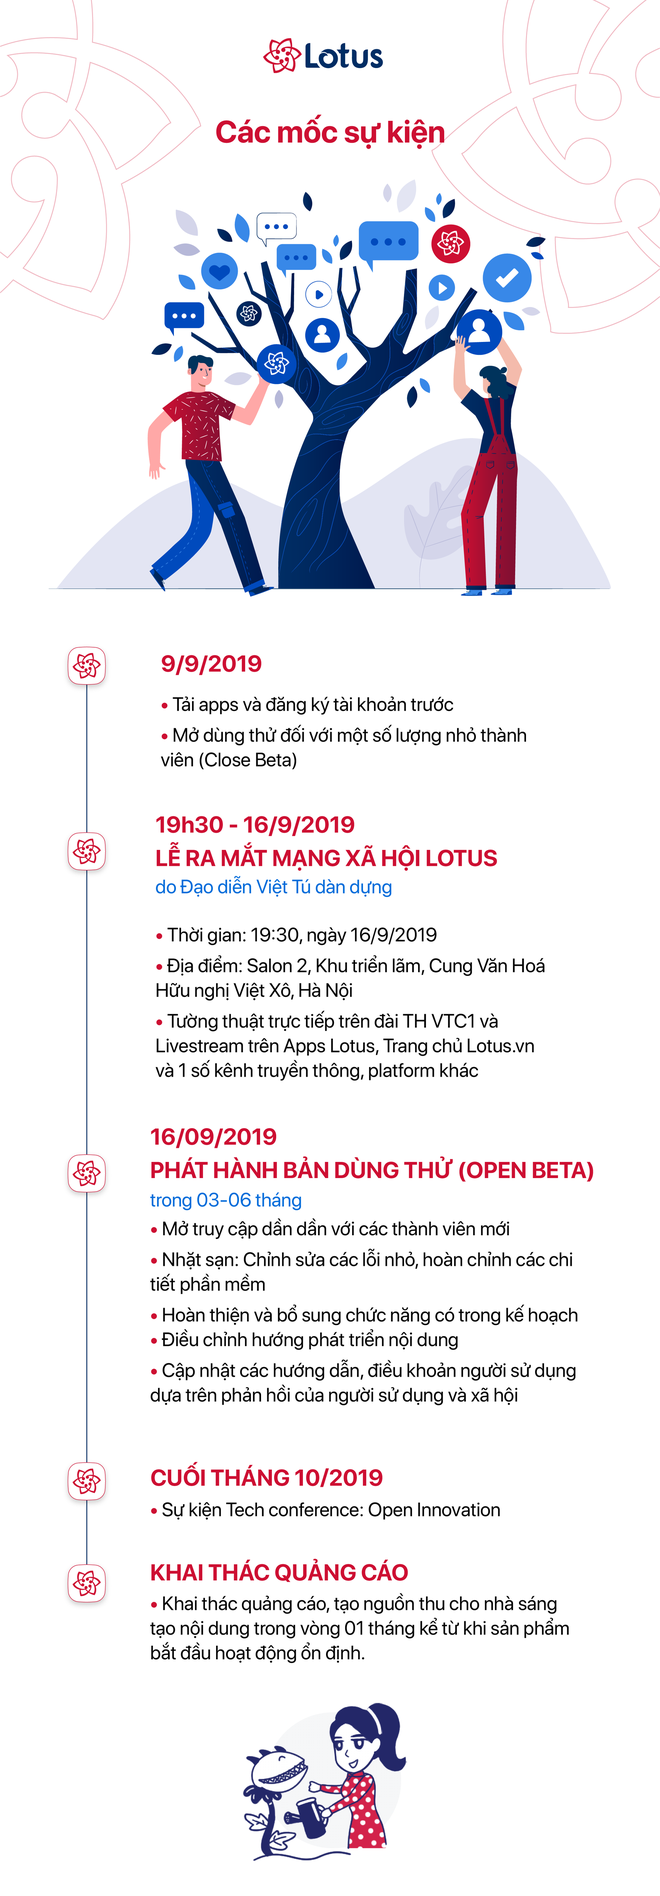 Doanh nhân, bác sĩ kỳ vọng về MXH “make in Việt Nam”: Lotus là sân chơi mới, sẽ giúp nội dung được trở về đúng giá trị đích thực - Ảnh 5.